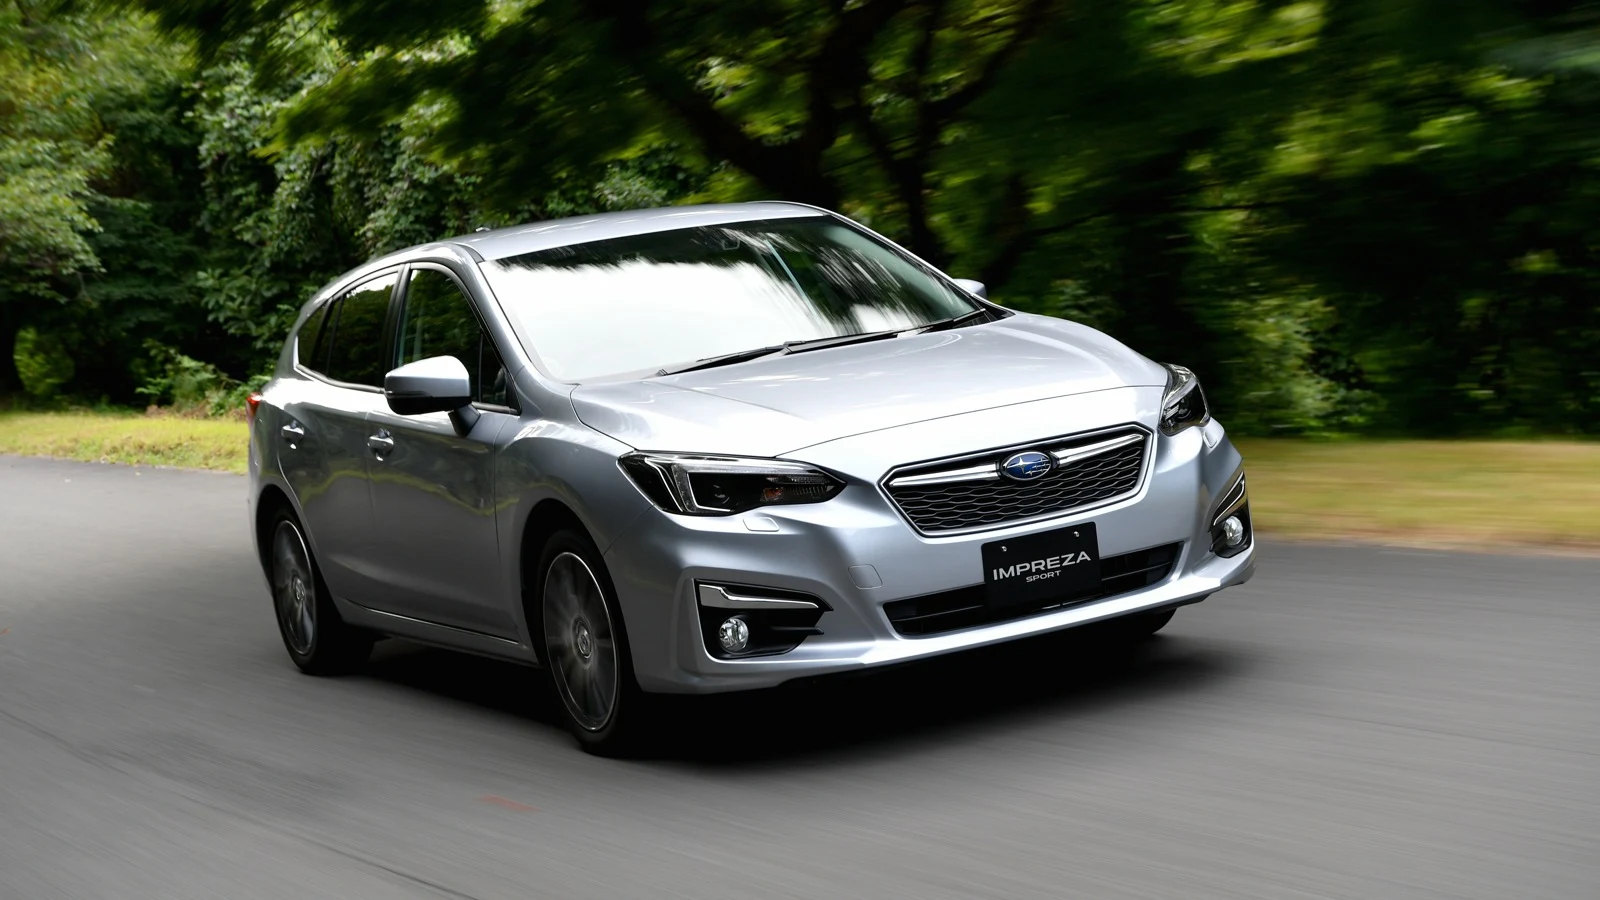 Subaru Impreza 2017 hướng đến đối tượng giới trẻ nhờ vẻ ngoài mới mẻ hơn